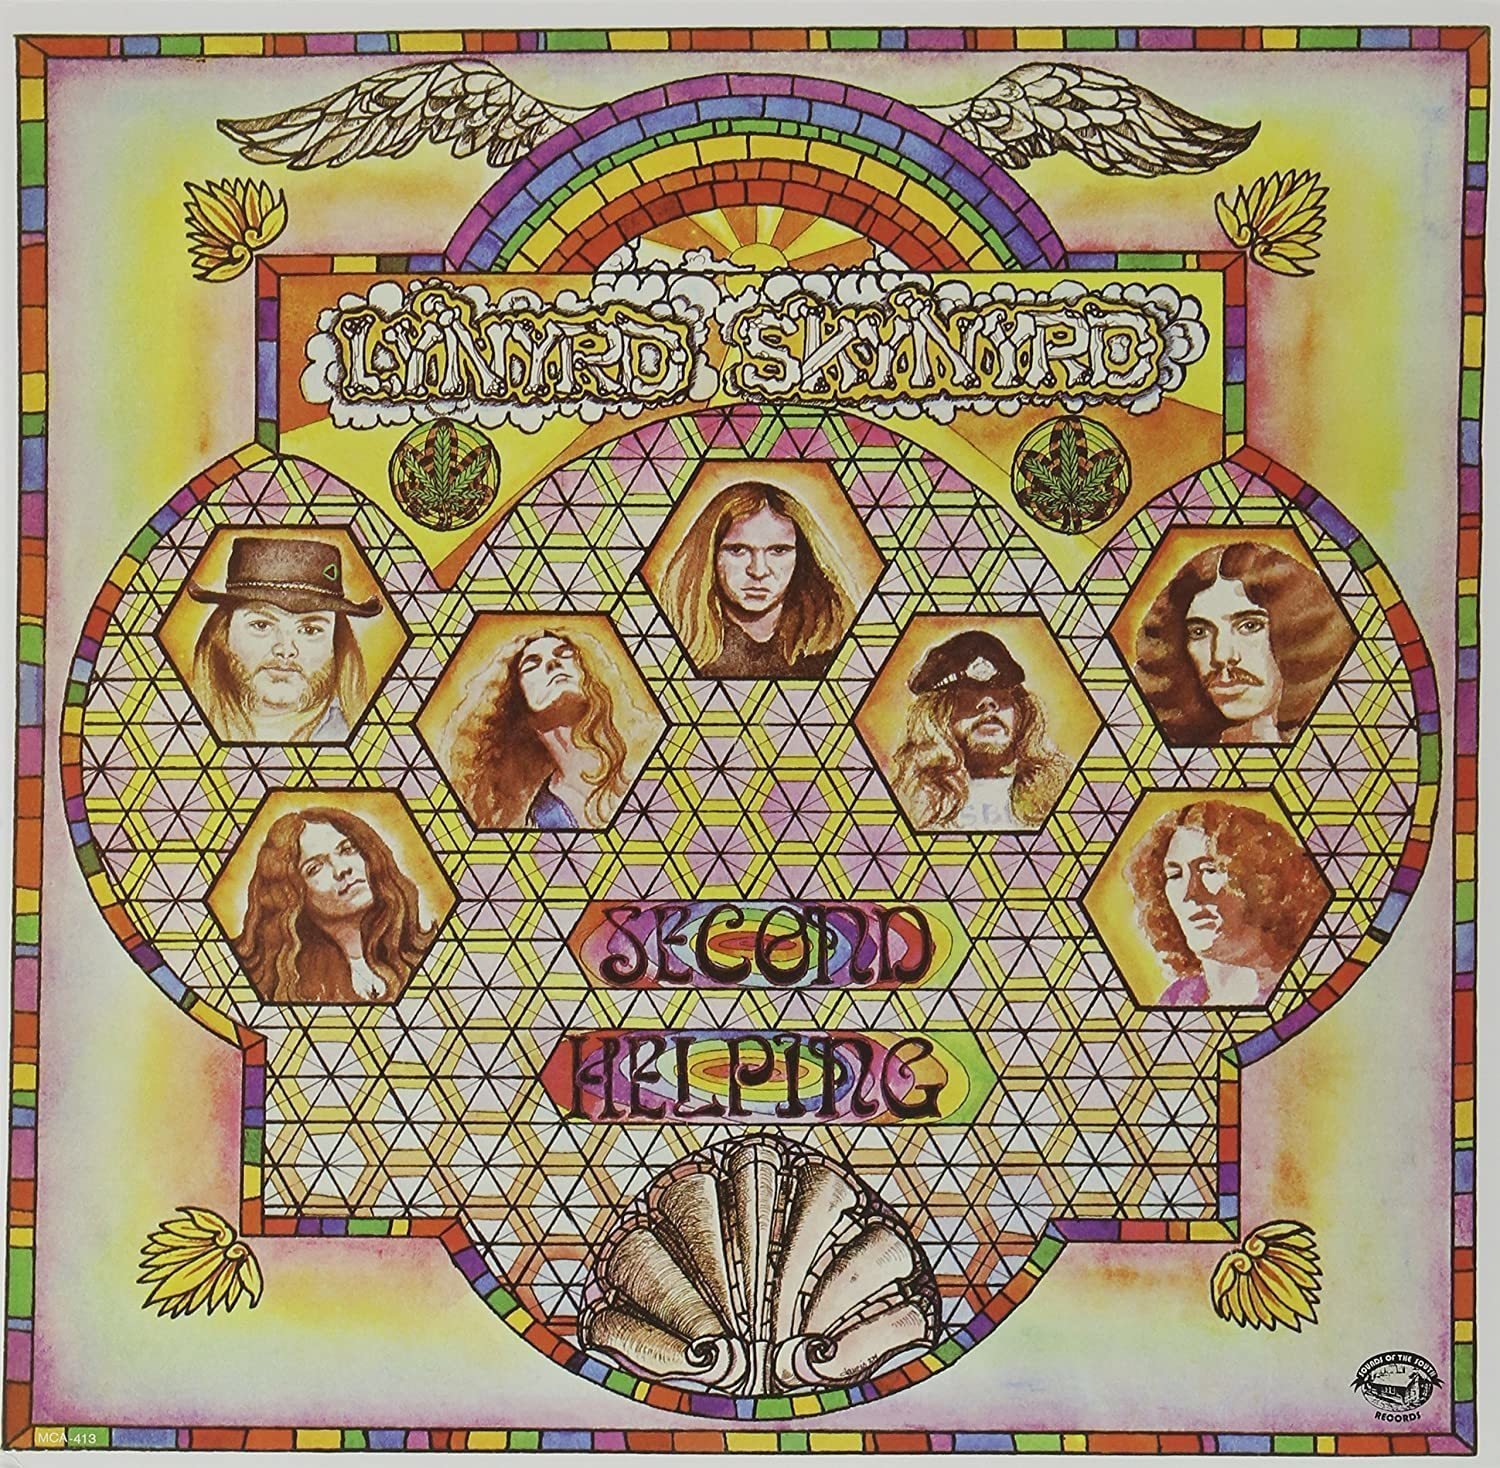 LP platňa Lynyrd Skynyrd - Second Helping (200g (LP)